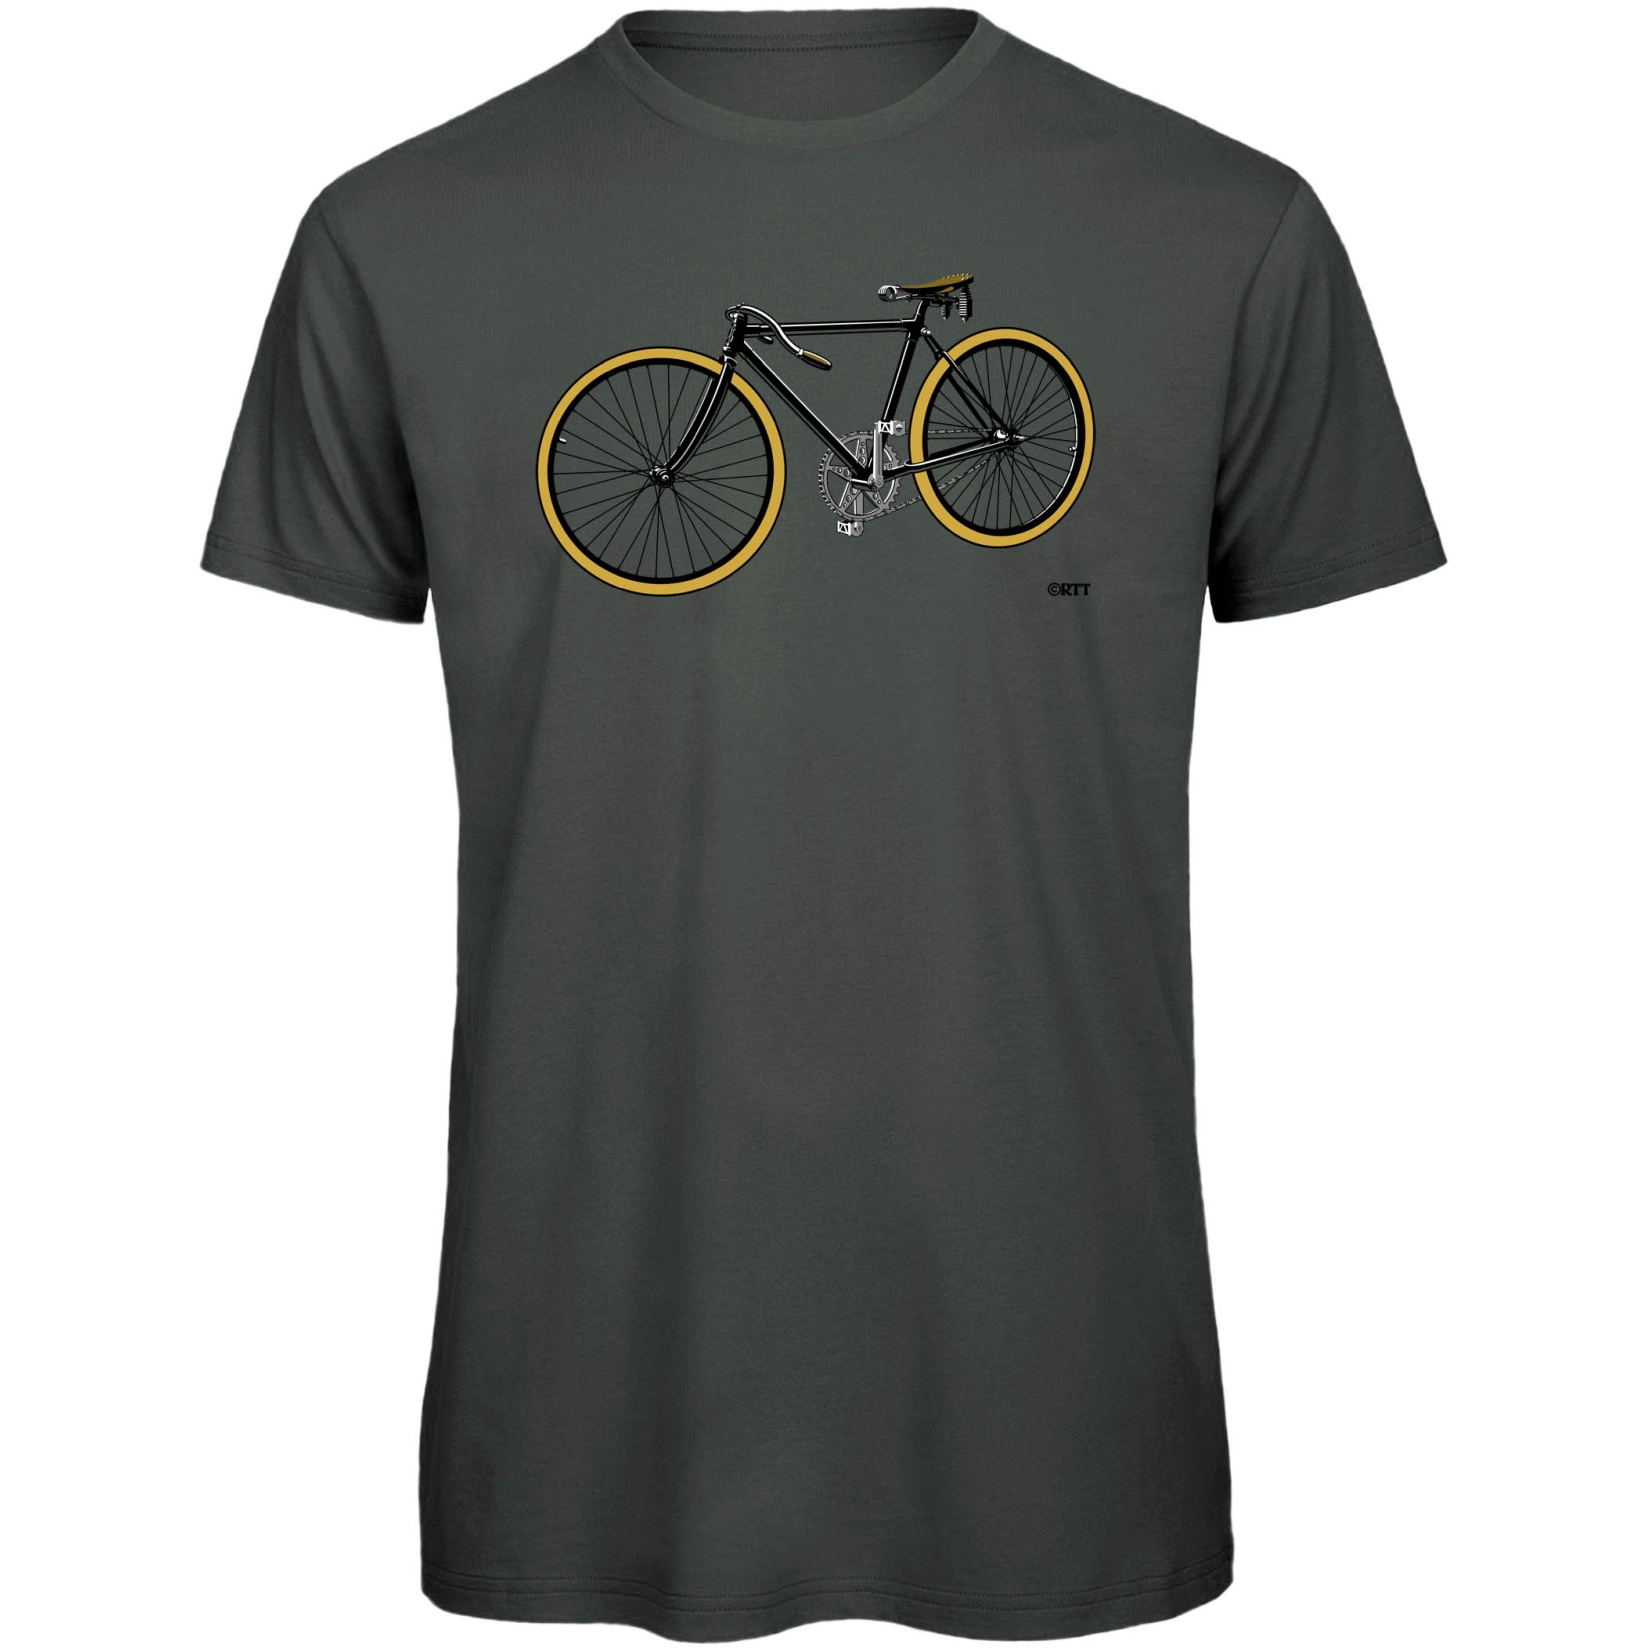 Produktbild von RTTshirts Fahrrad T-Shirt Retro Rennrad - dunkelgrau